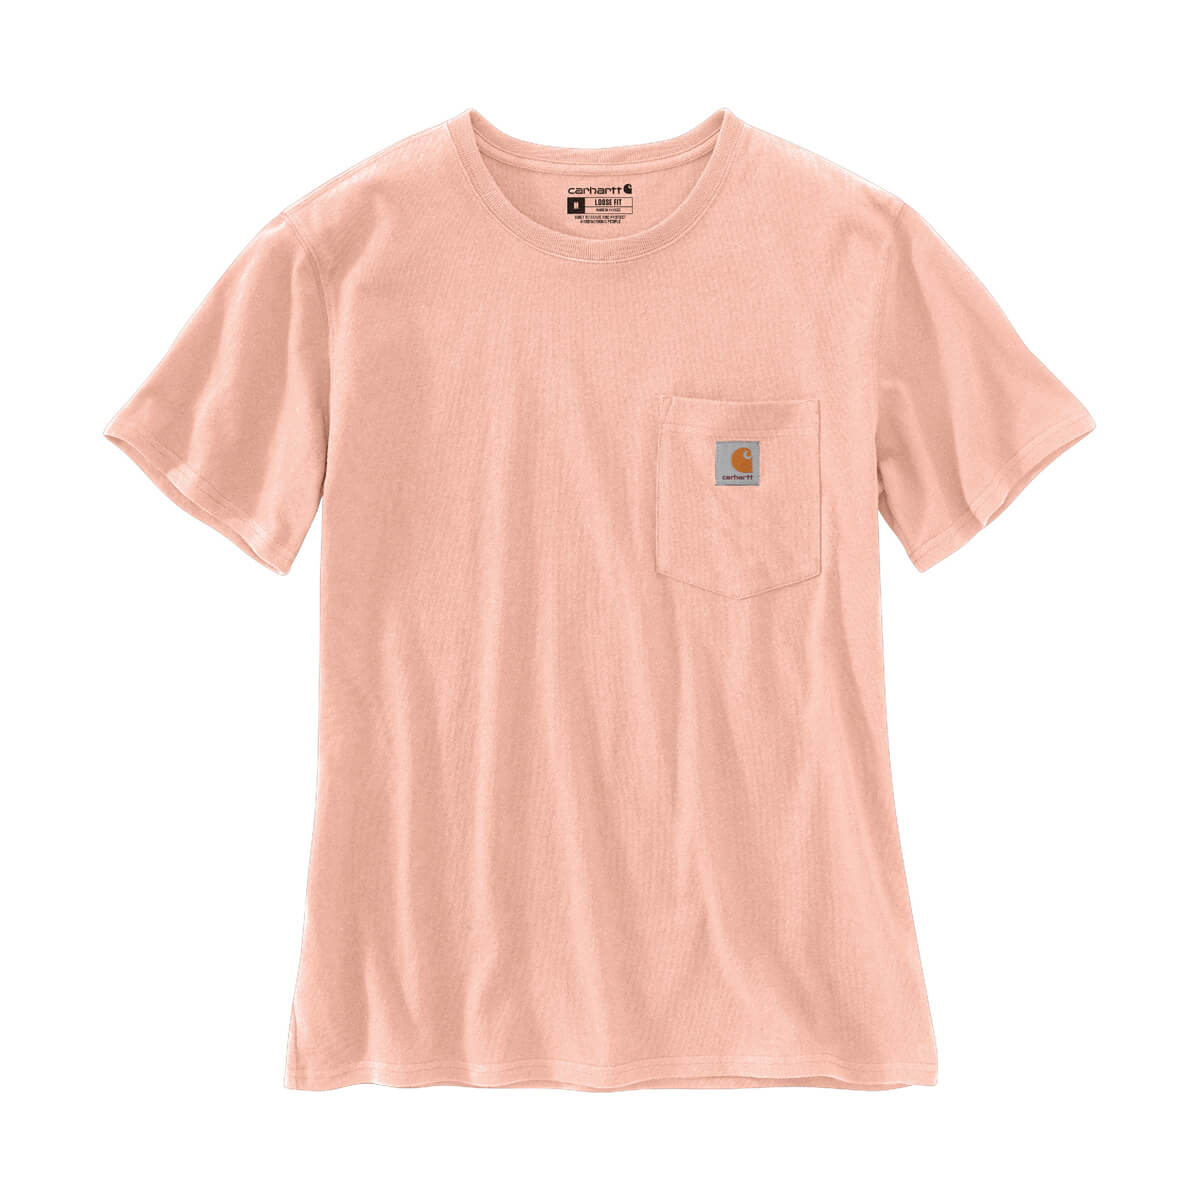 Carhartt Women's Loose Fit Heavyweight Short-Sleeve Pocket T-Shirt - Tropical Peach